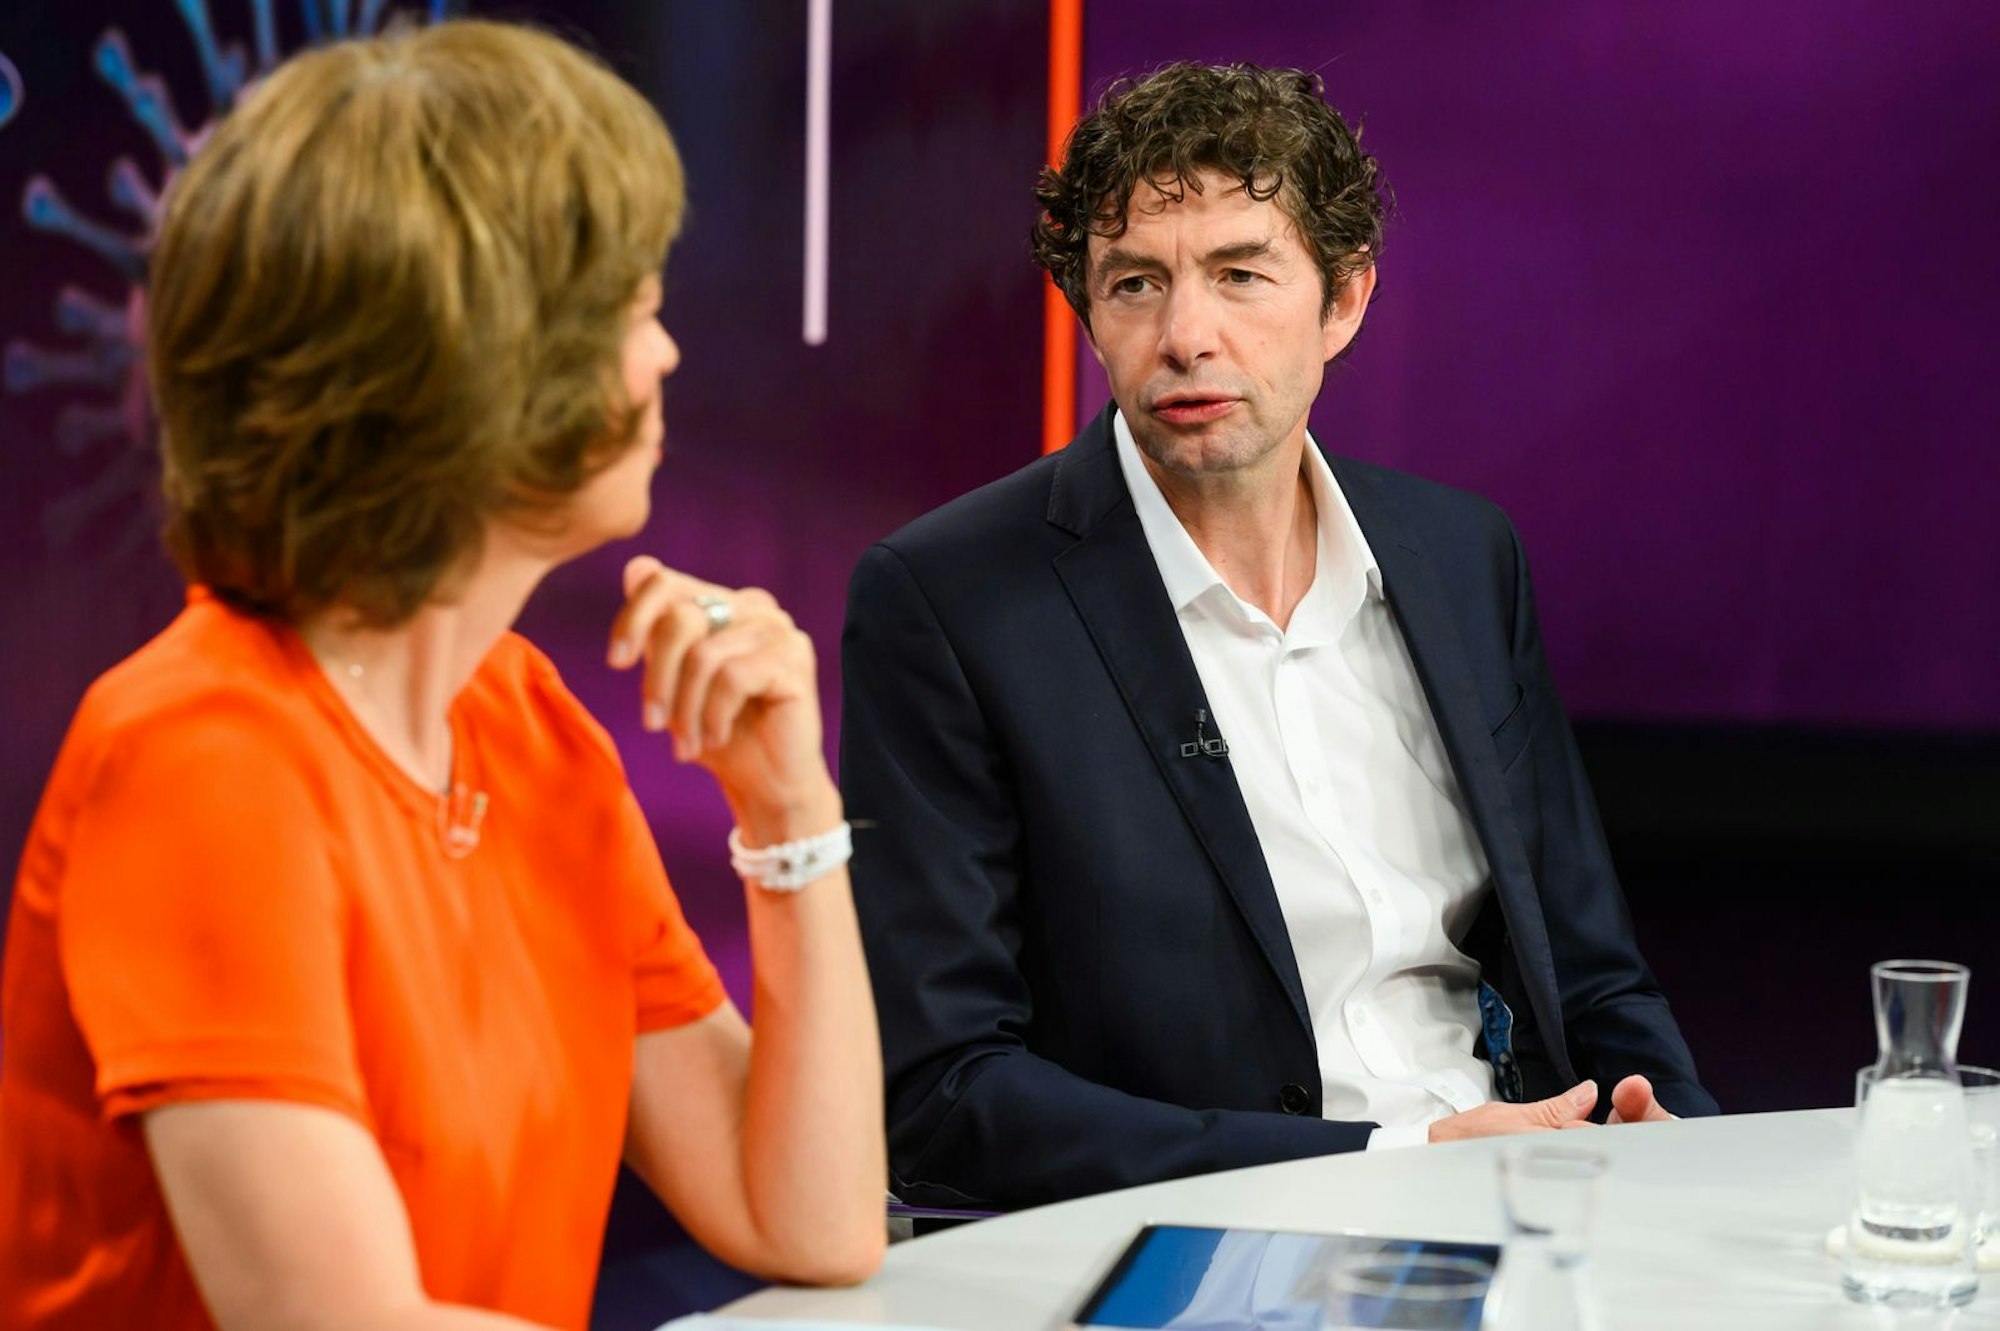 Im Gespräch mit Maybrit Illner erklärt Christian Drosten: „Ich hätte mir gewünscht, dass die Grenze zwischen Wissenschaftlern und politischen Entscheidern klarer dargestellt wird.“  (Bild: ZDF/Jule Roehr)